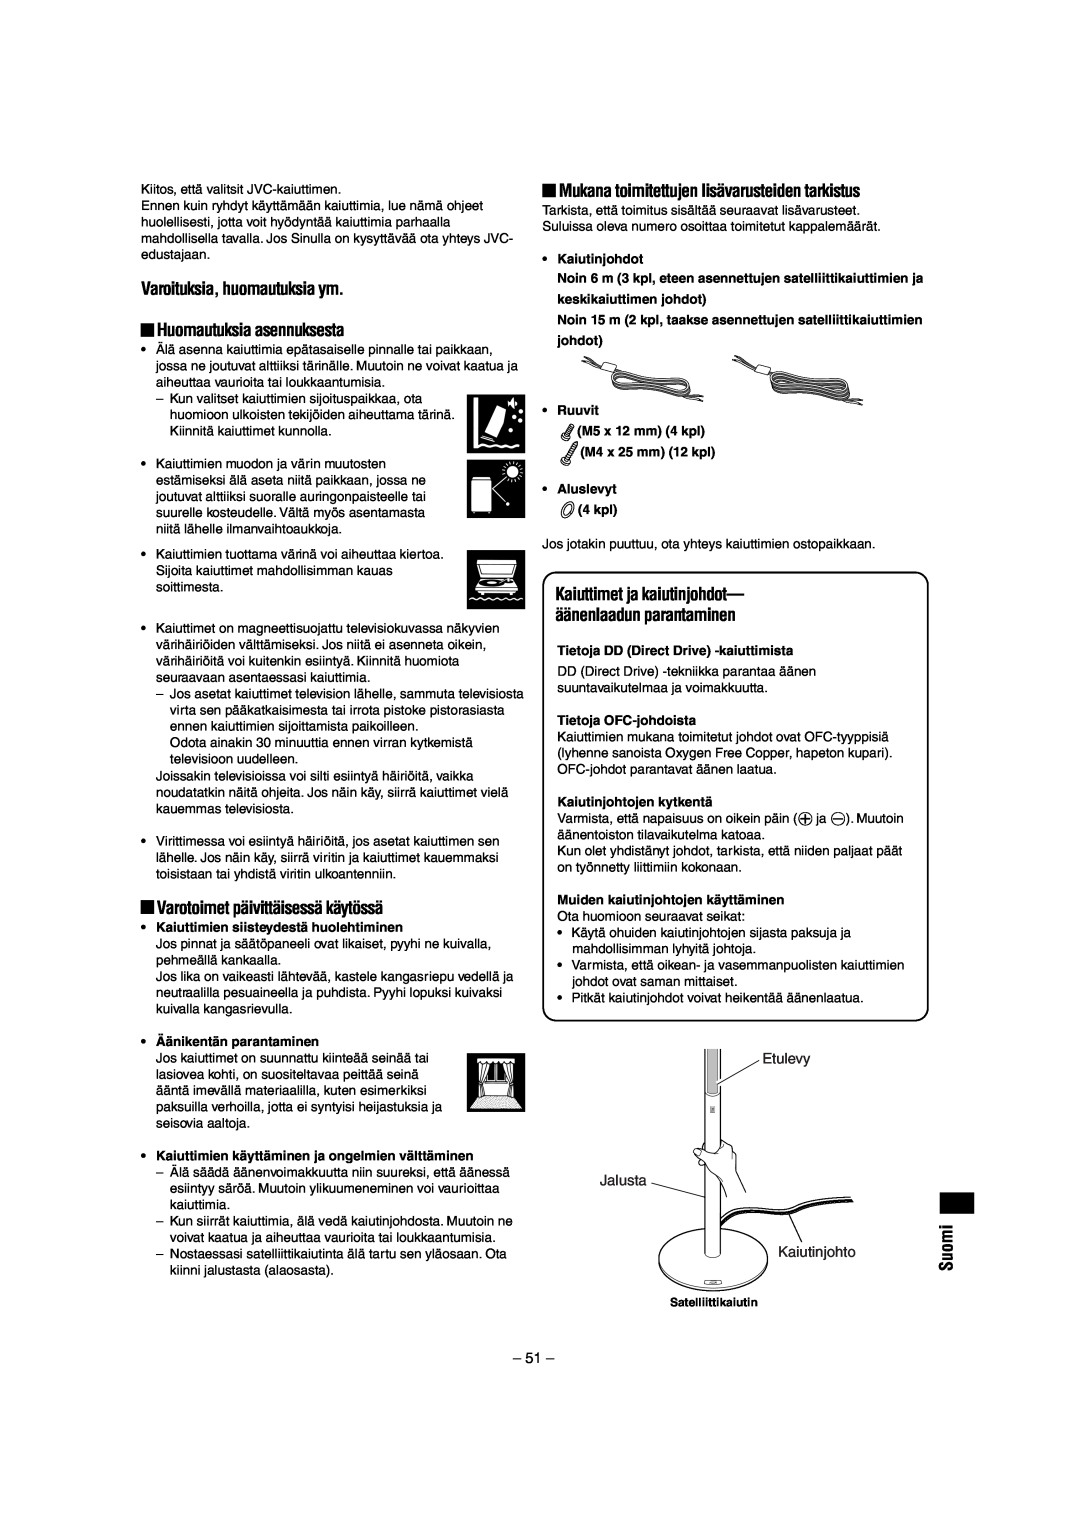 JVC LVT0953-001B manual Varoituksia, huomautuksia ym, Huomautuksia asennuksesta, Varotoimet päivittäisessä käytössä, Suomi 